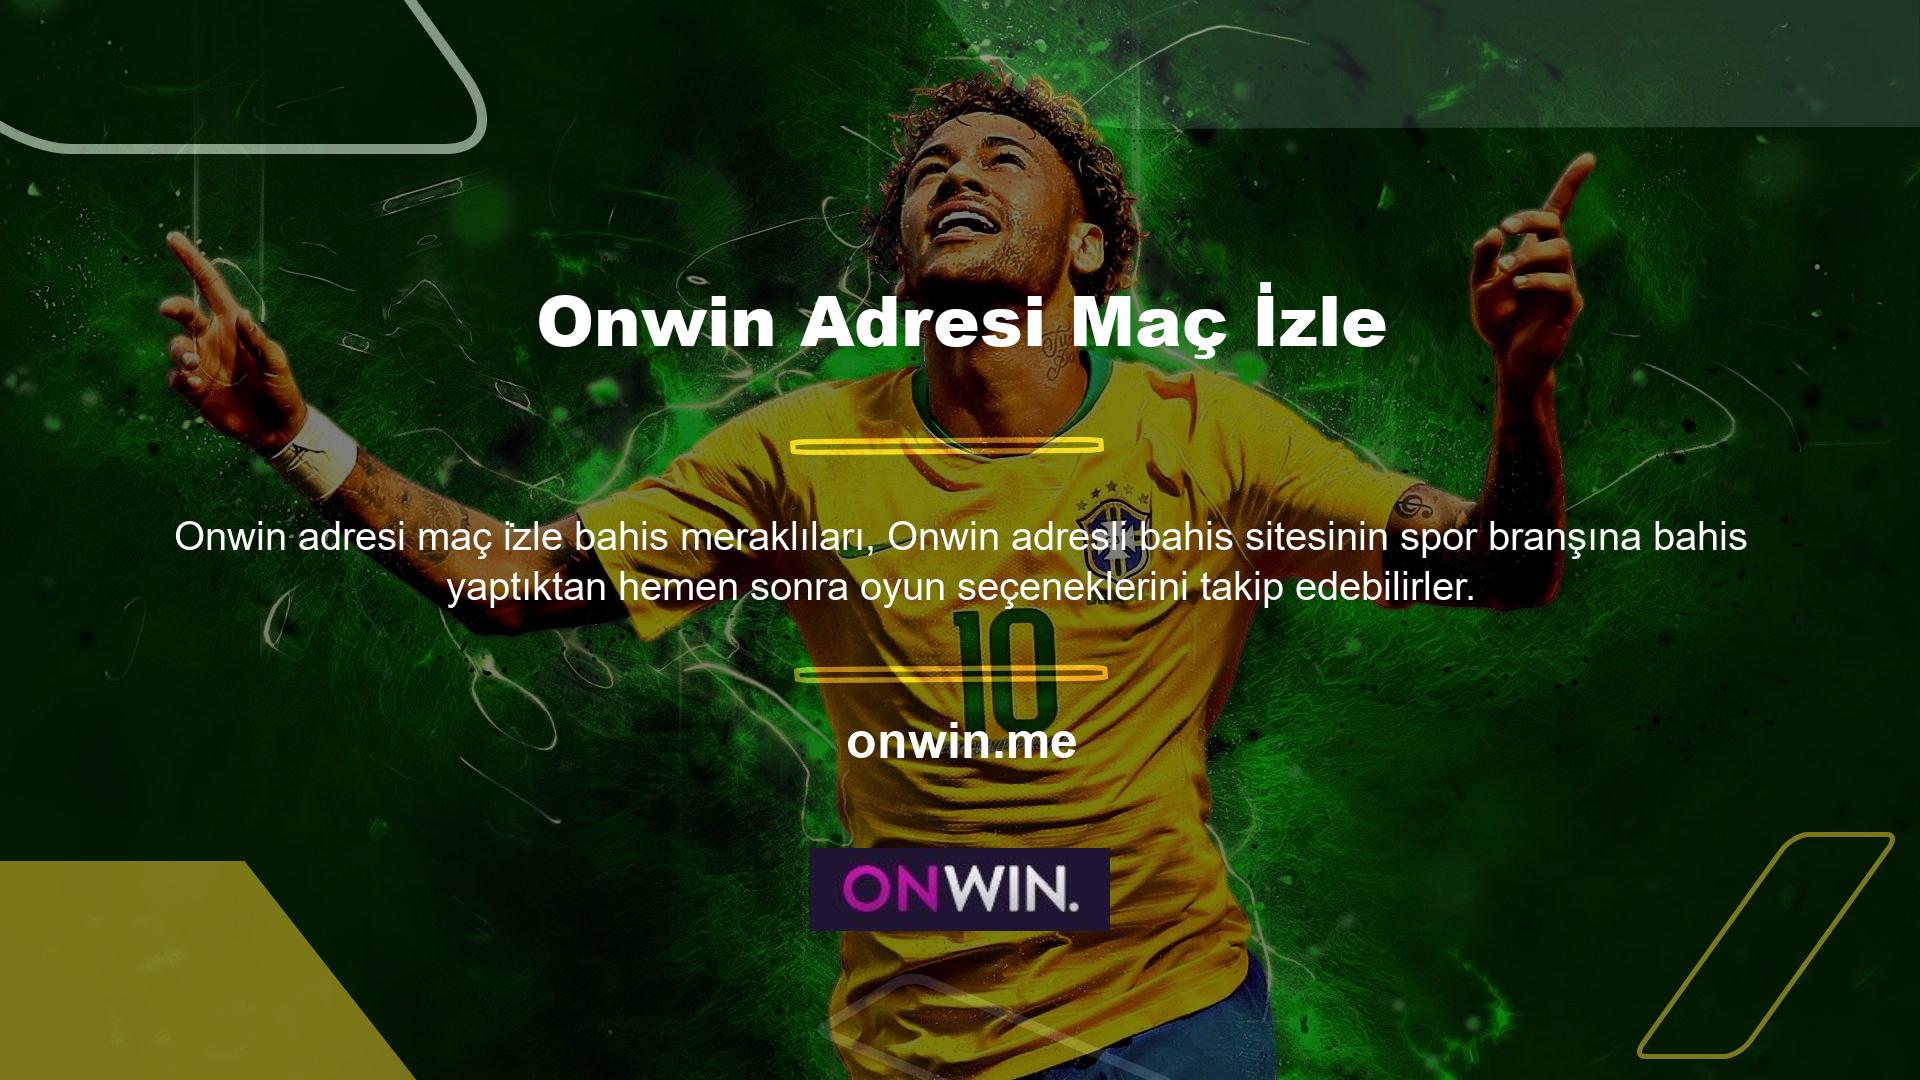 Onwin adresindeki Maç İzle sekmesi üzerinden bahis tutkunlarına simüle edilmiş bir formatta oyun seçenekleri sunulmaktadır